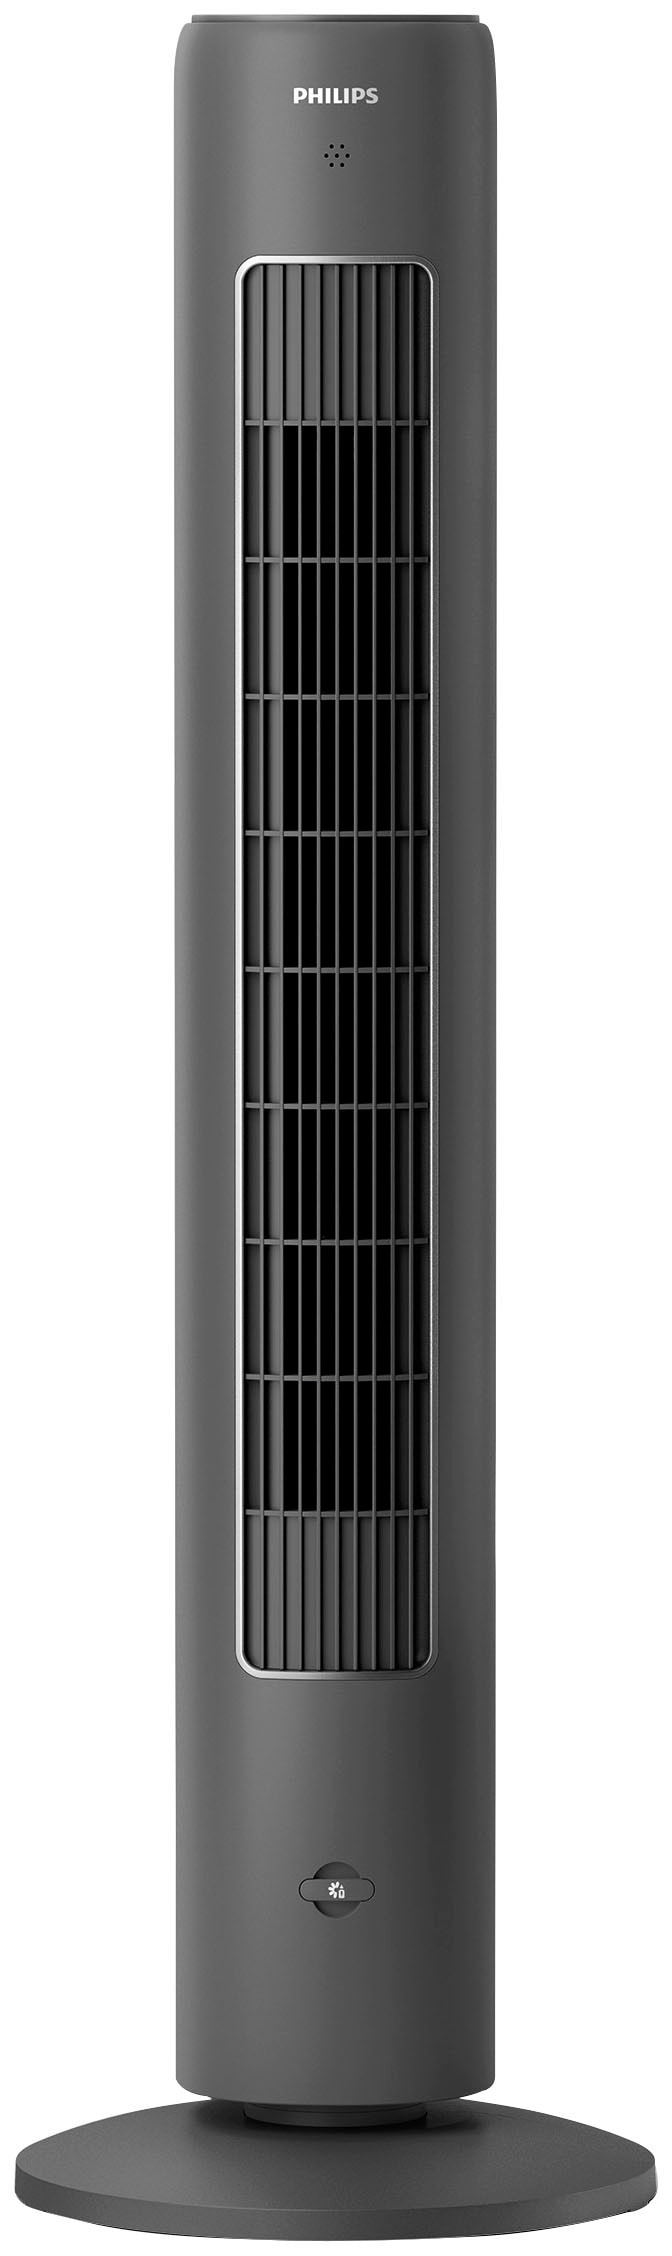 Turmventilator »CX5535/11«, 3 Stufen, Höhe 105cm, inkl. Fernbedienung, geeignet als...